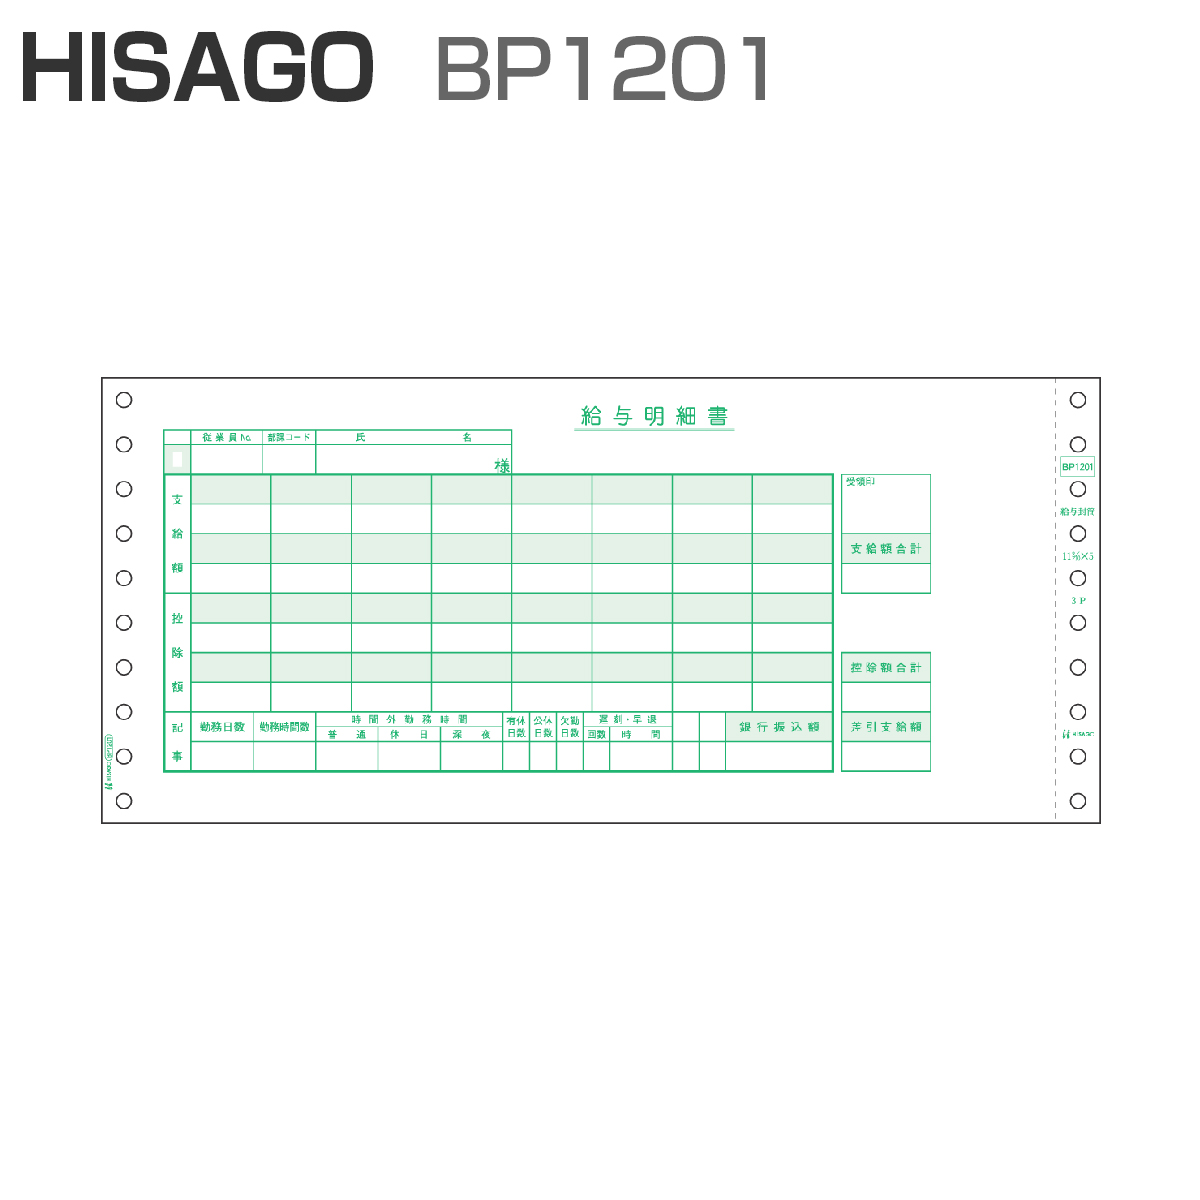 パナシア】 ヒサゴ BP1201 ベストプライス版 給与封筒 3P (500セット)